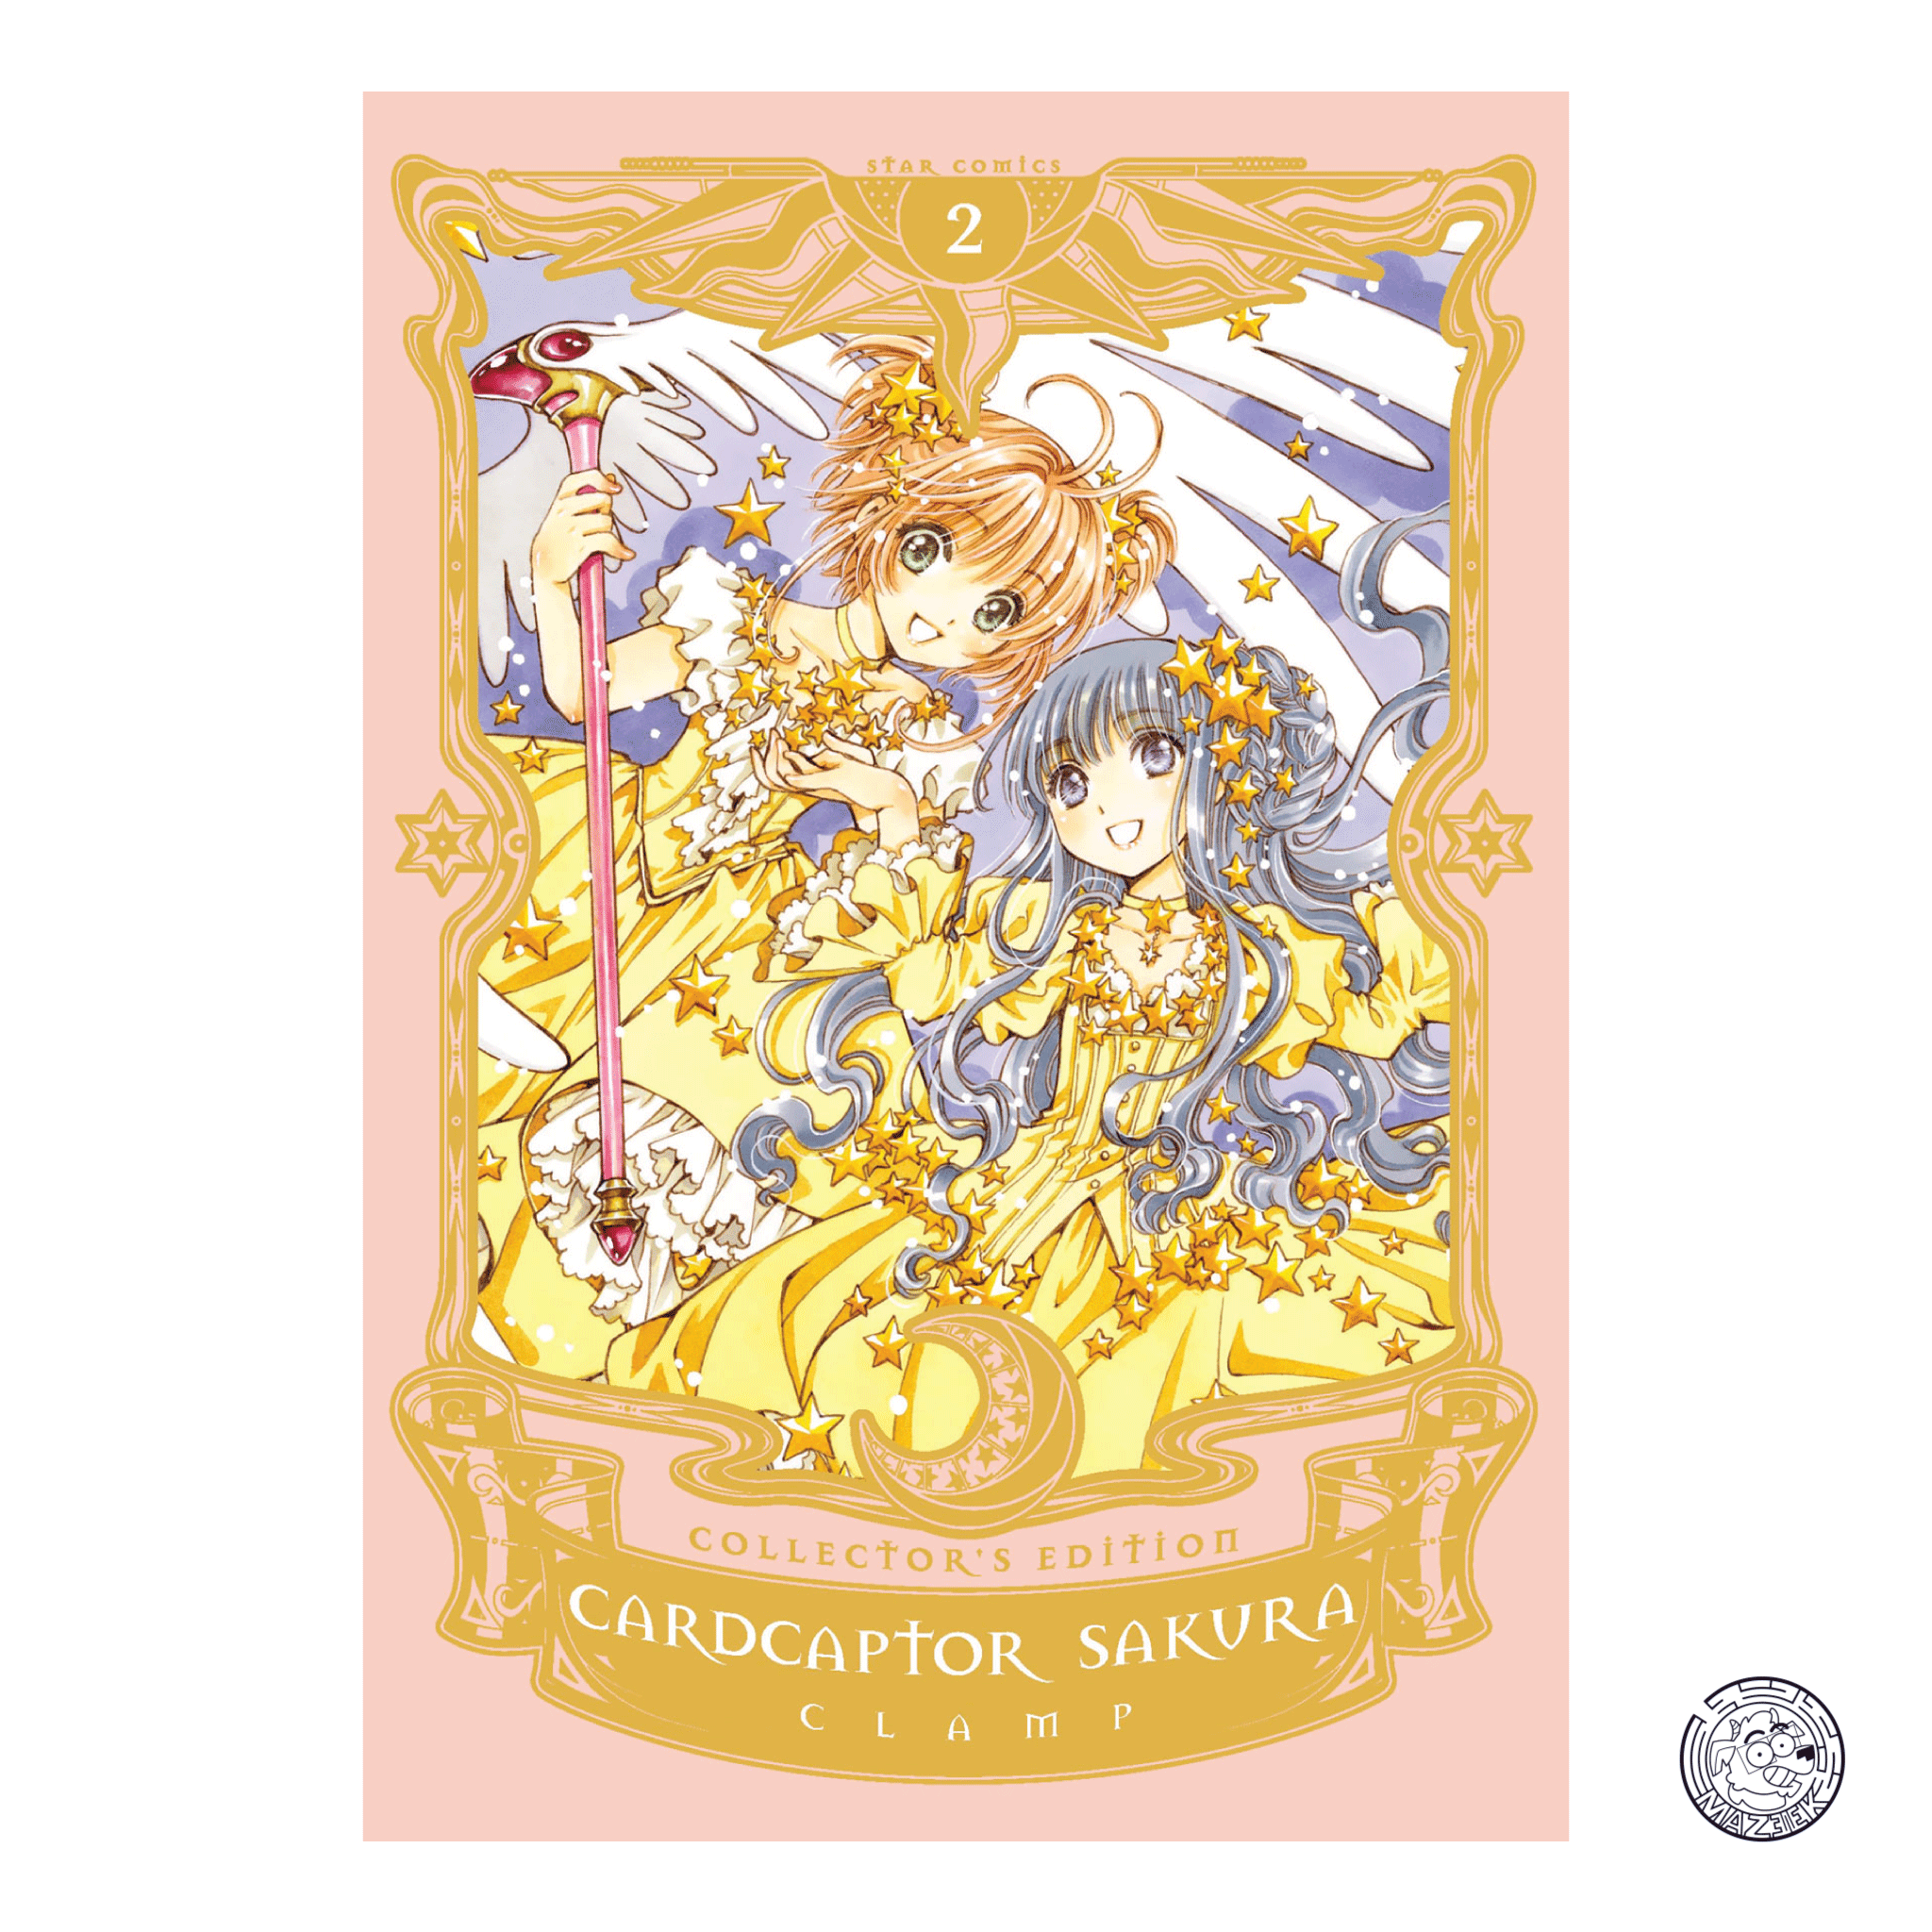 Cardcaptor Sakura Collector’s Edition 02